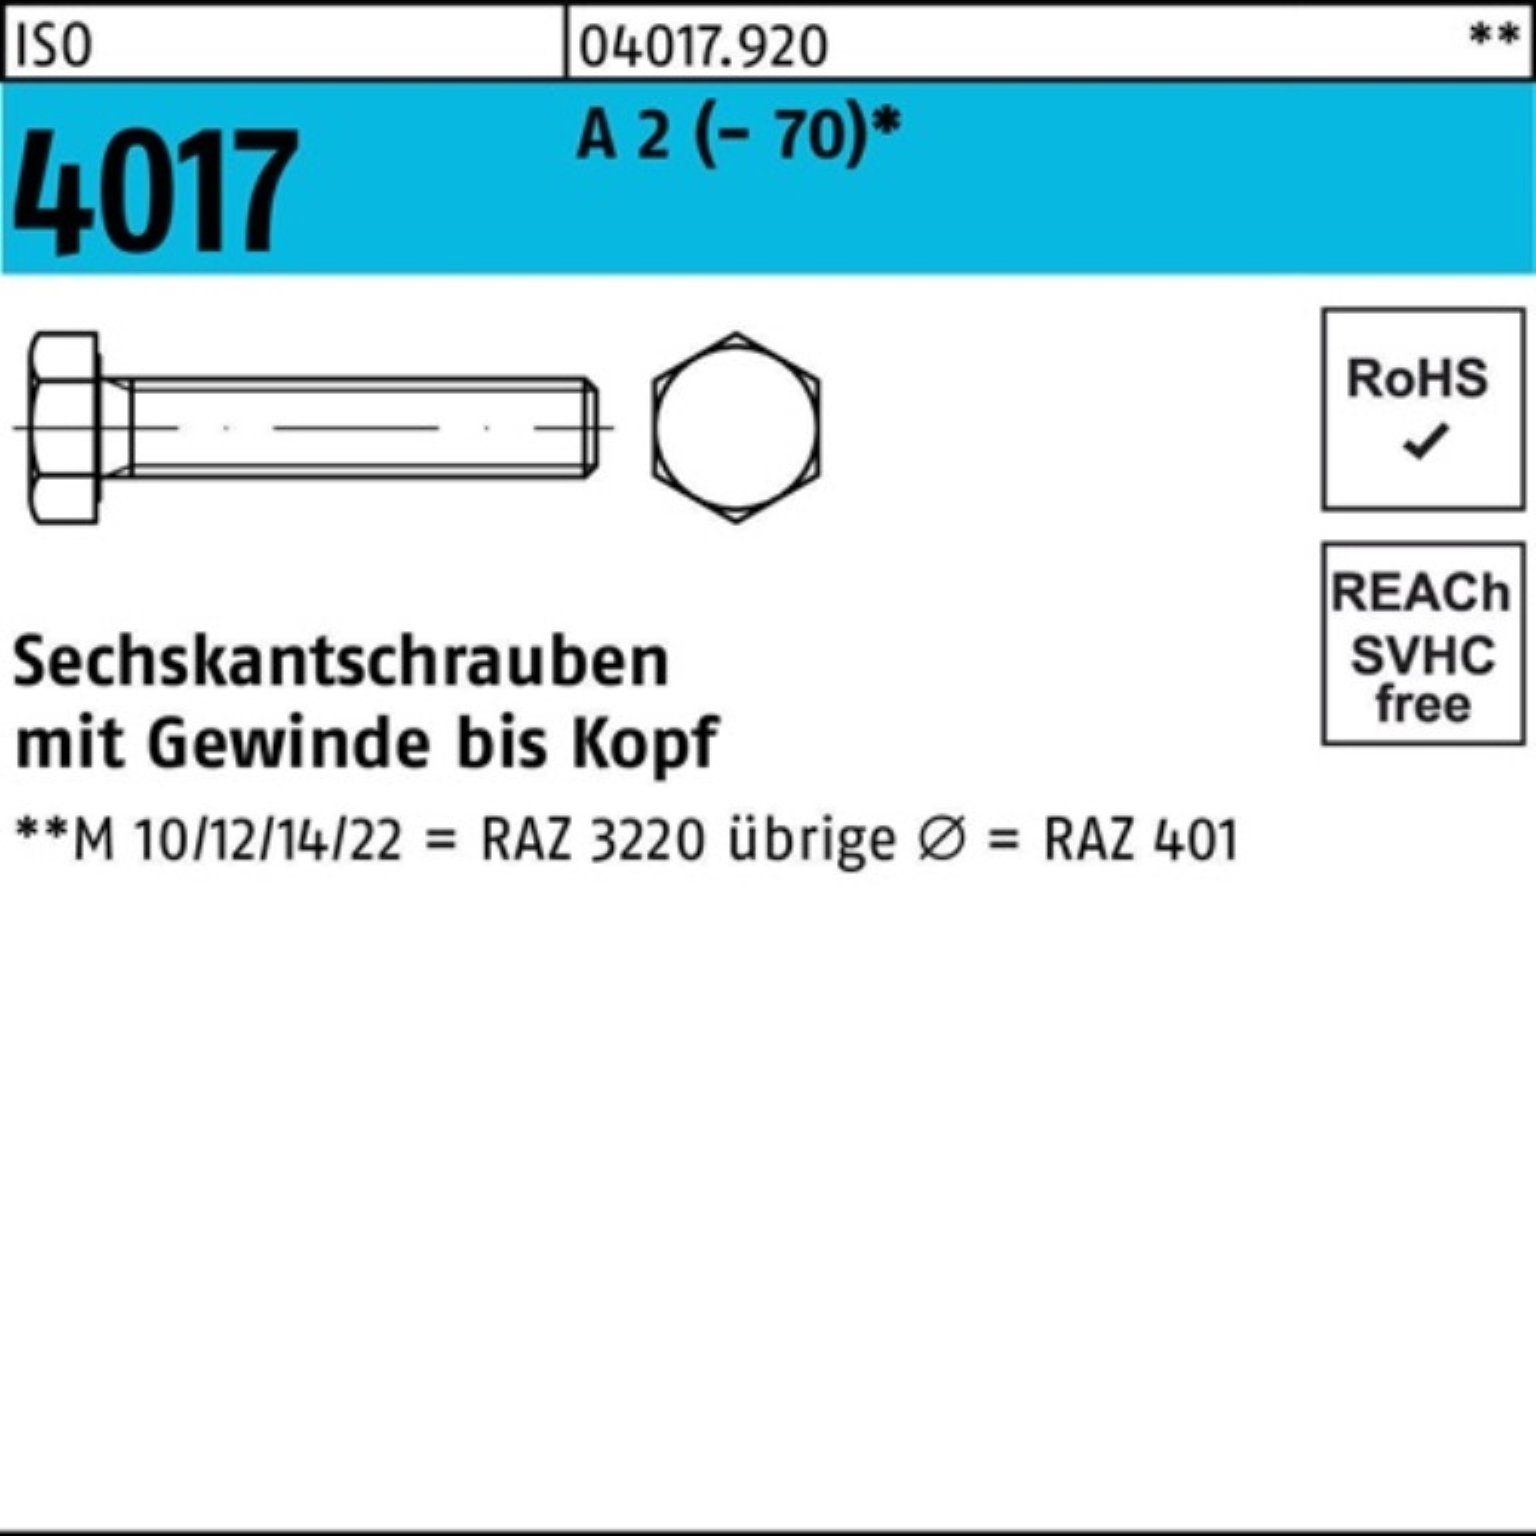 Bufab Sechskantschraube 100er Pack Sechskantschraube ISO 4017 VG M16x 85 A 2 (70) 25 Stück